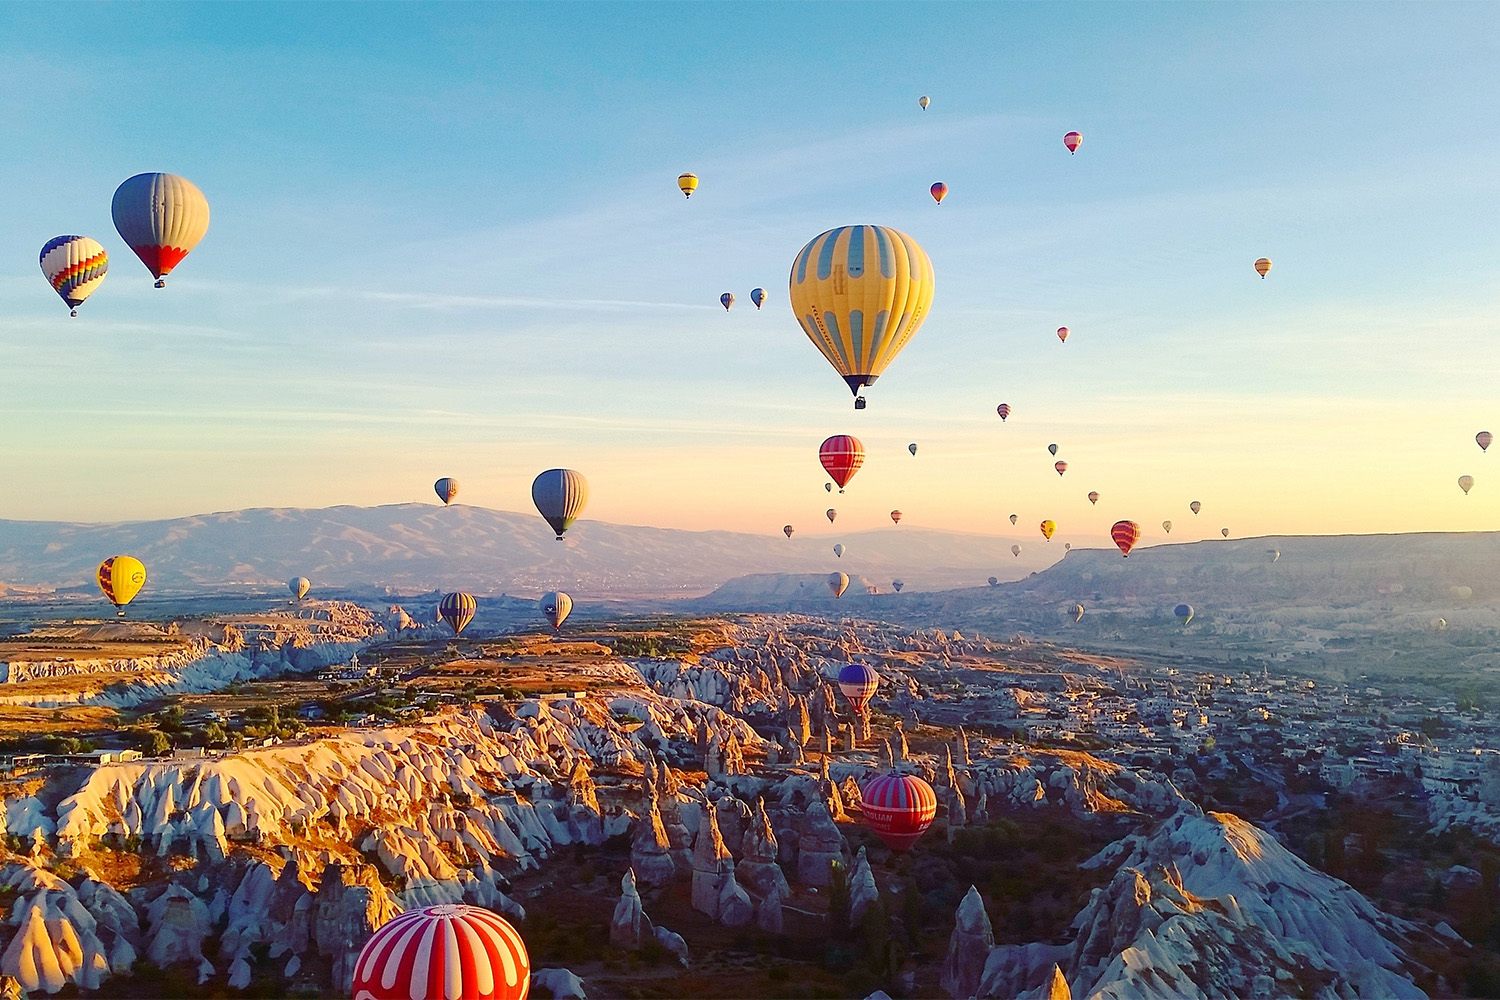 Beyond the Balloons The Hidden Treasures of Cappadocia